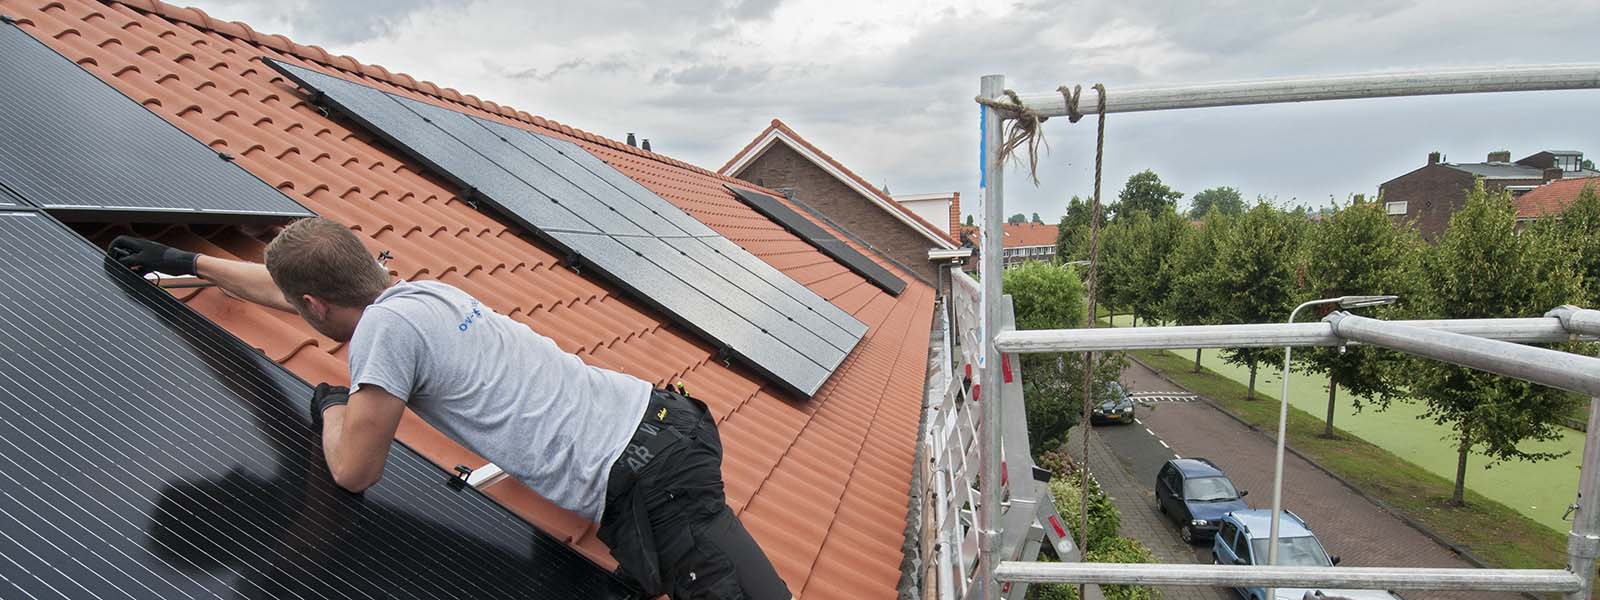 Monteren van zonnepanelen op een schuin dak van een woning